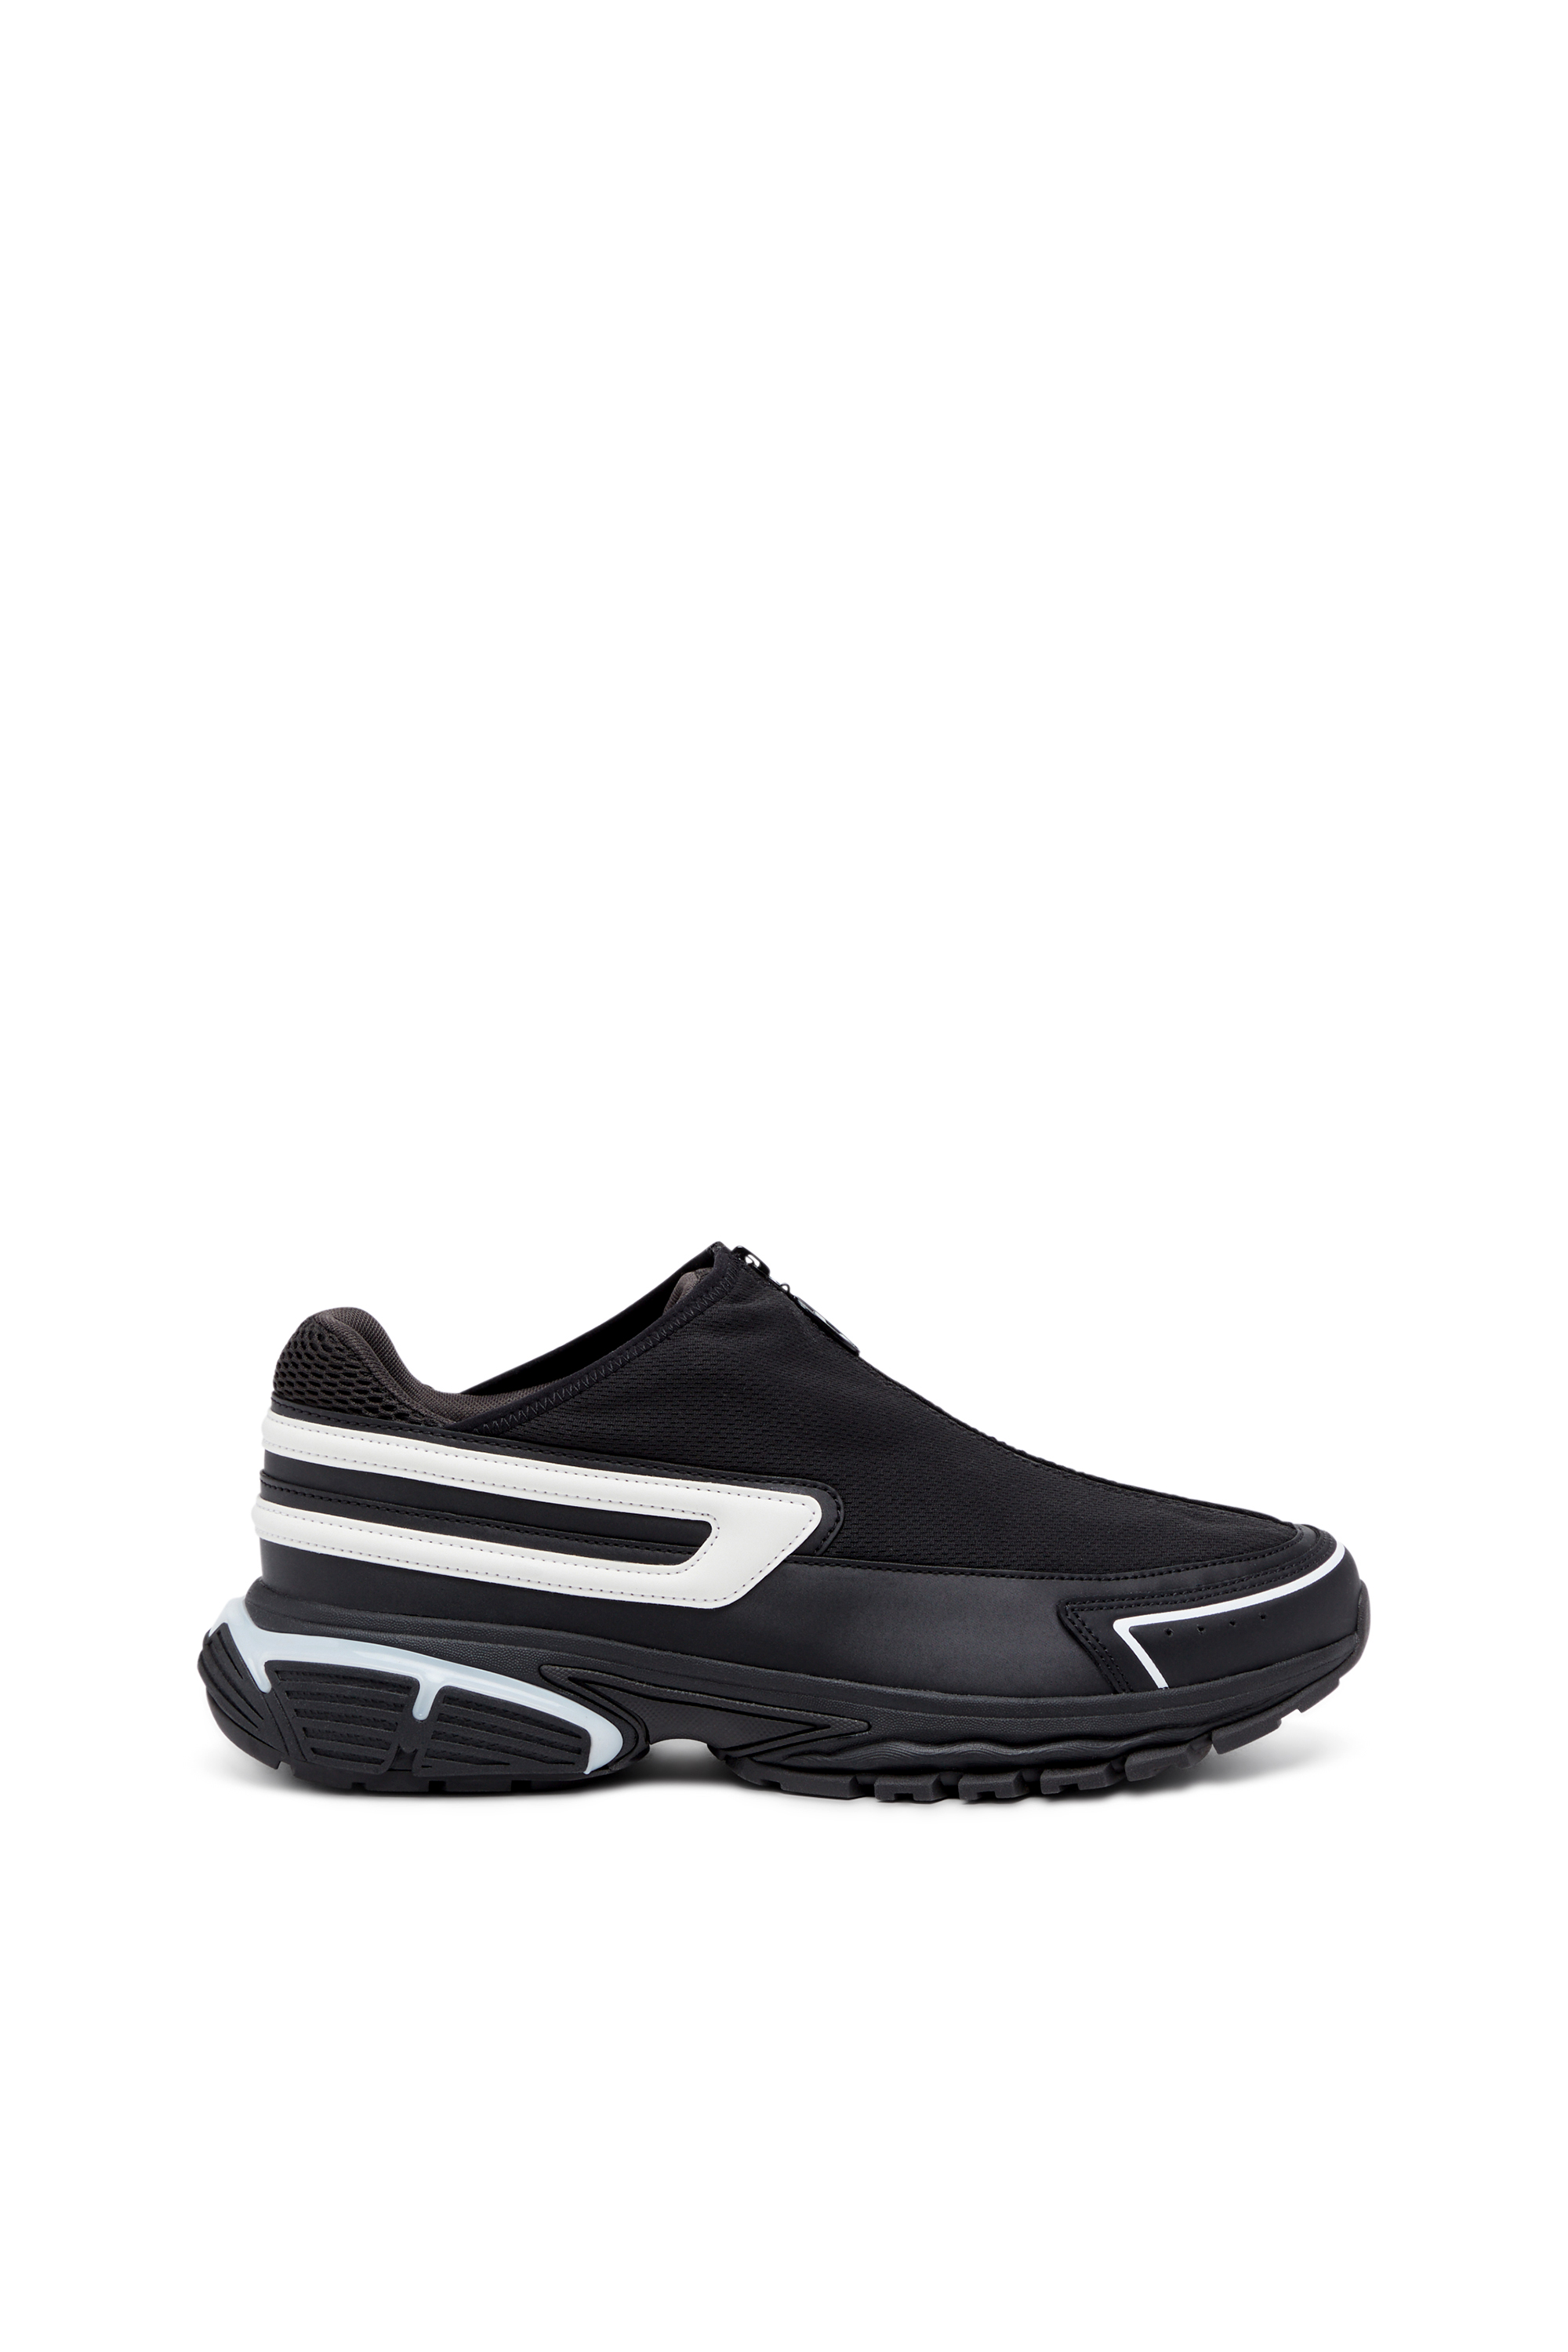 S-SERENDIPITY PRO-X1 ZIP X, Negro/Blanco - Sneakers